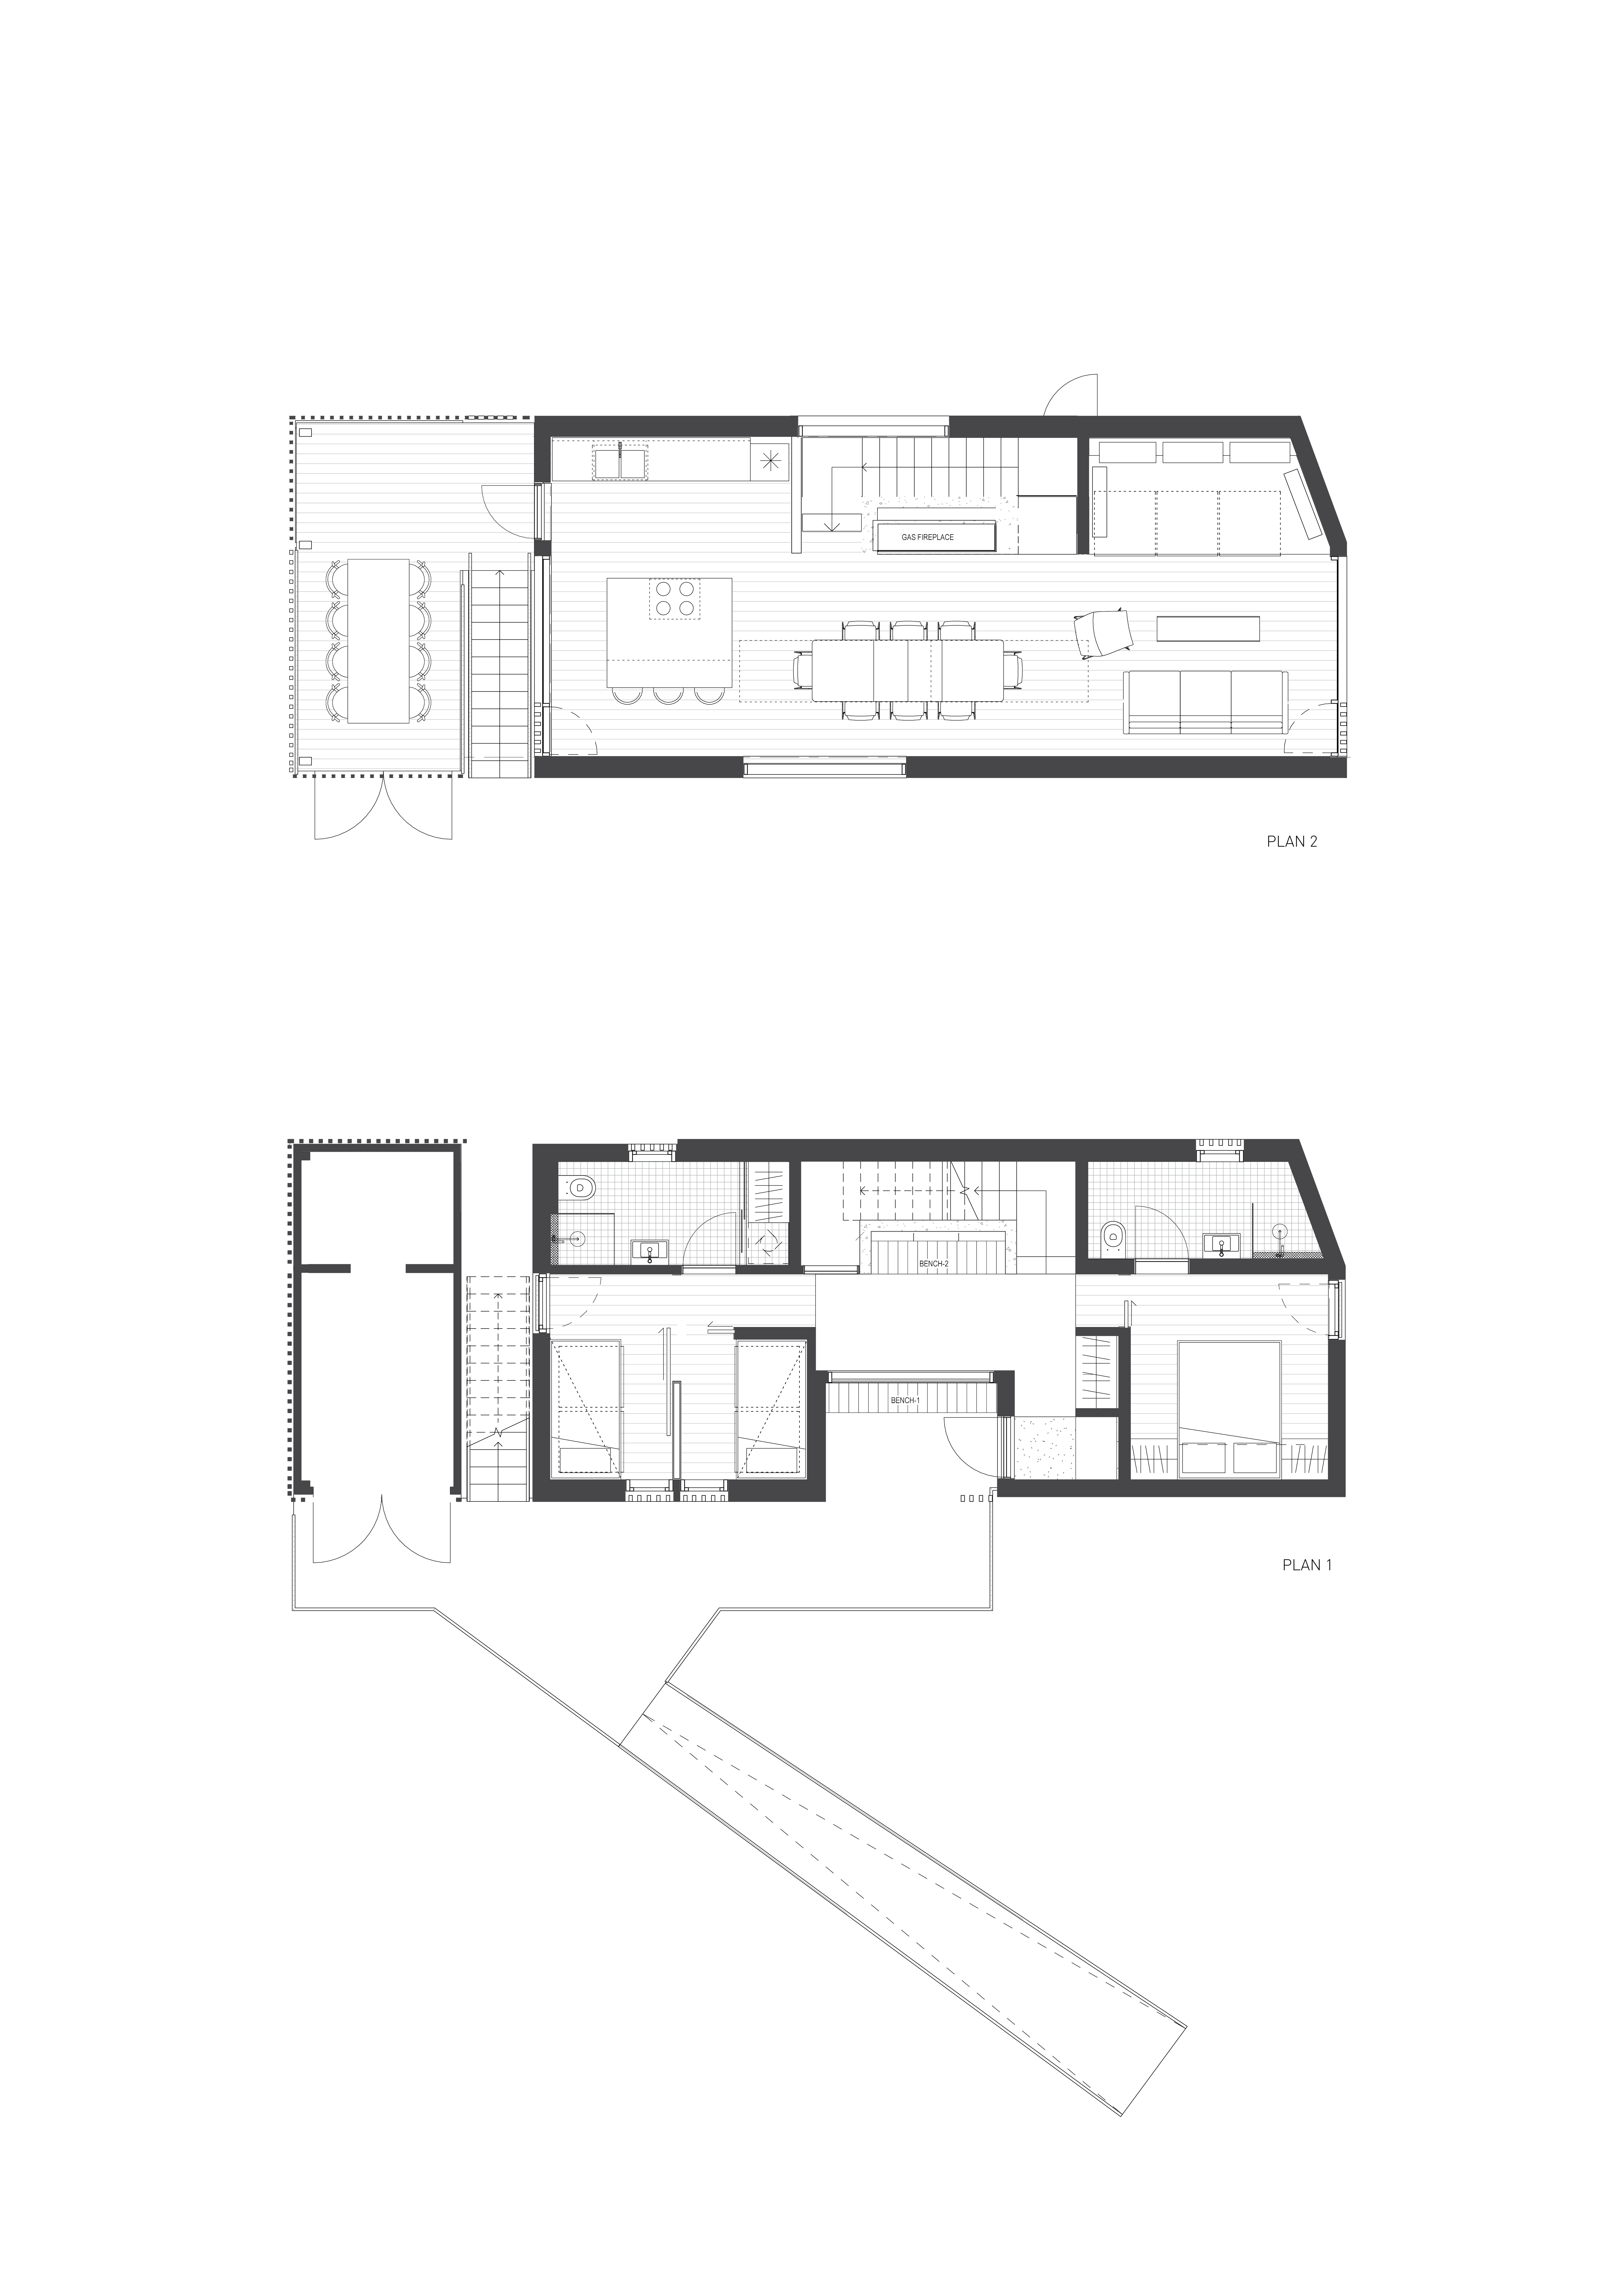 Image: Plan 12 vertikal layout 01